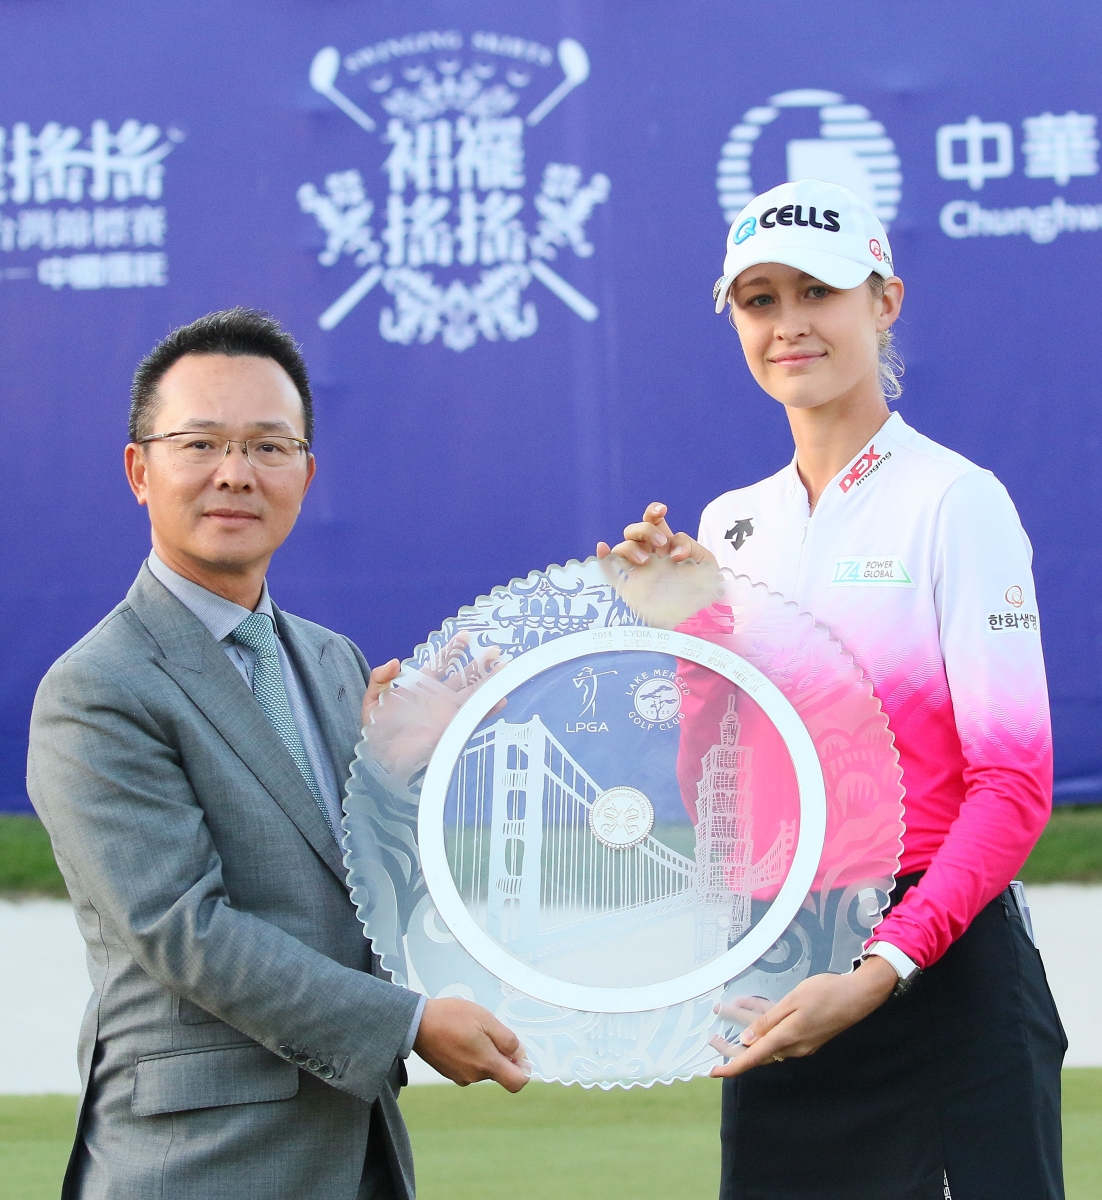 2018年在大溪球場拿下裙襬搖搖LPGA台灣錦標賽冠軍的科達 (Nelly Korda，圖右)，業餘時期也是裙襬搖搖AJGA邀請賽冠軍得主(2015)；左為裙襬搖搖基金會會長王政松。